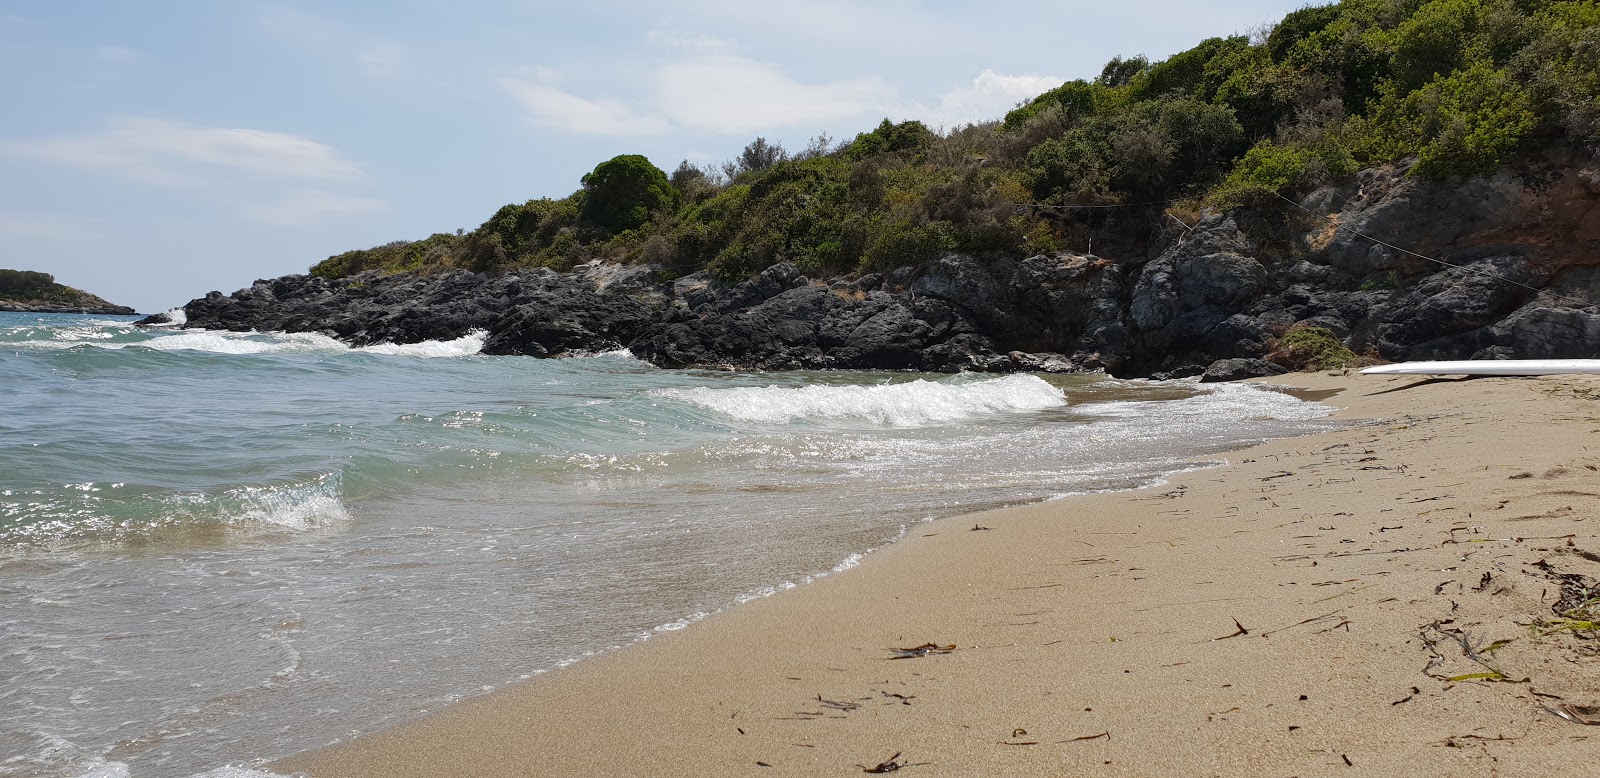 Fotografija Trinisa beach nahaja se v naravnem okolju